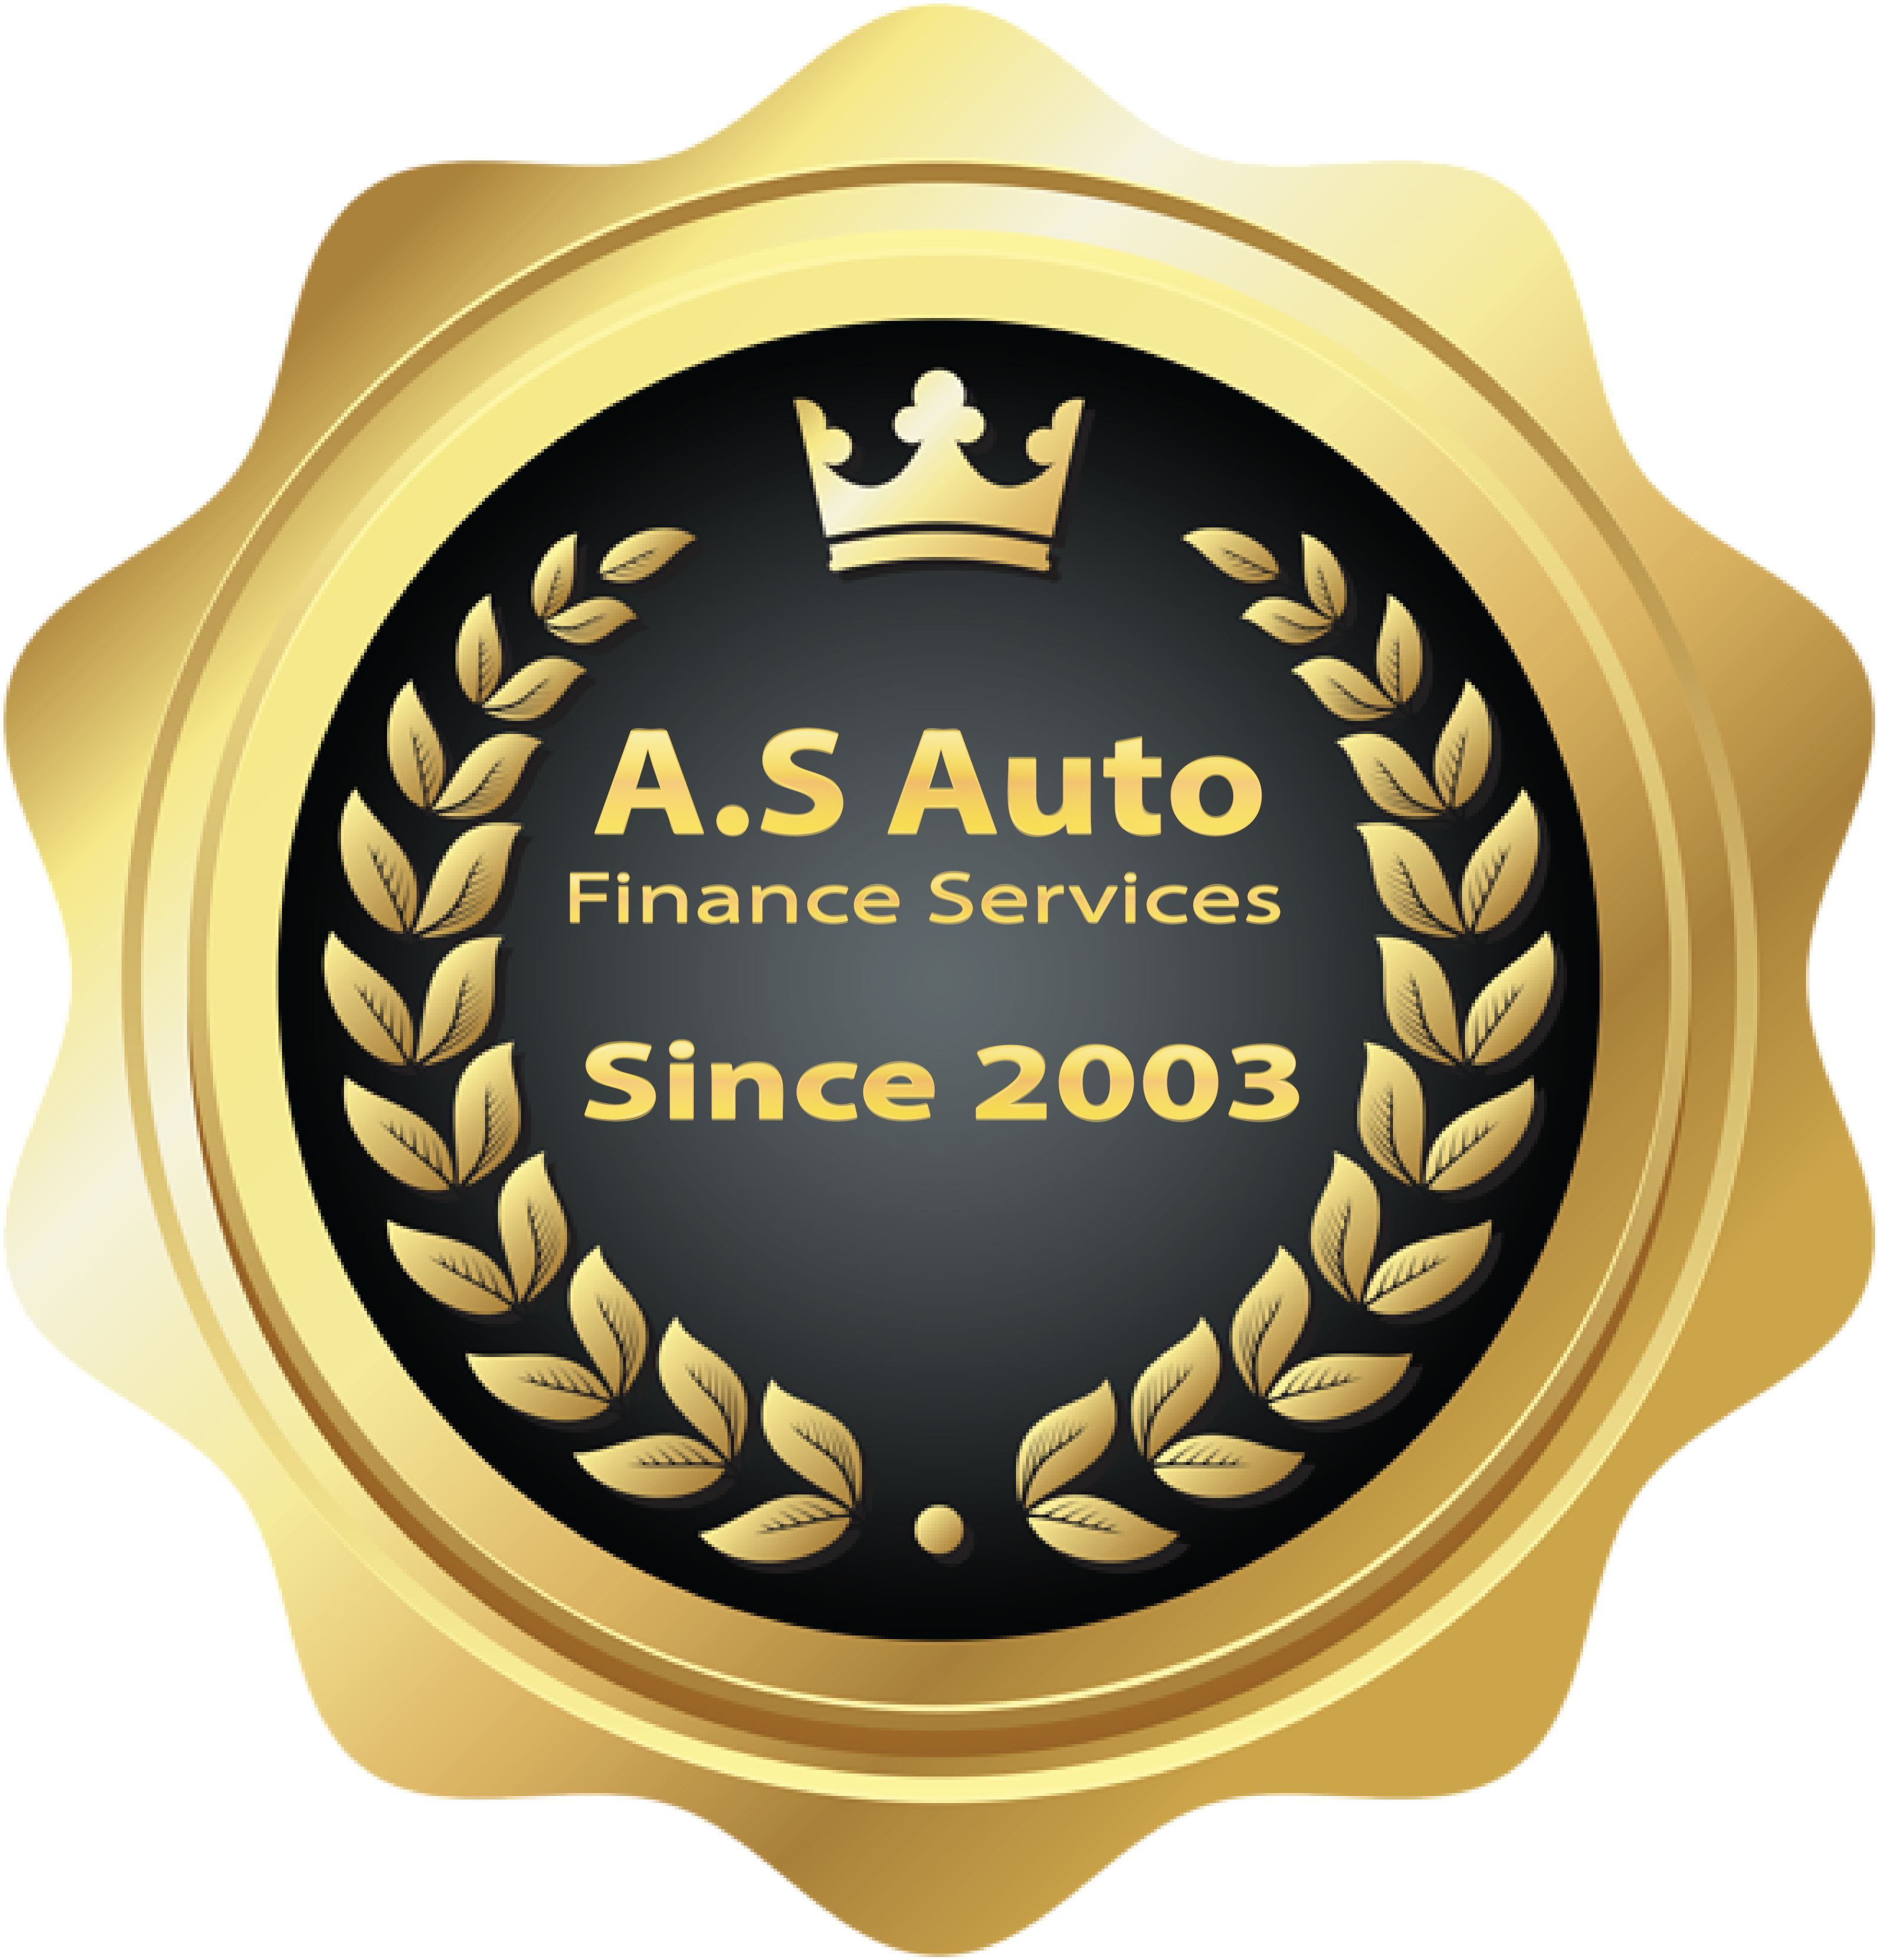 Auto Finance Services In Winnipeg Manitoba, Canada – Auto Loans, Car Loan, Auto finance